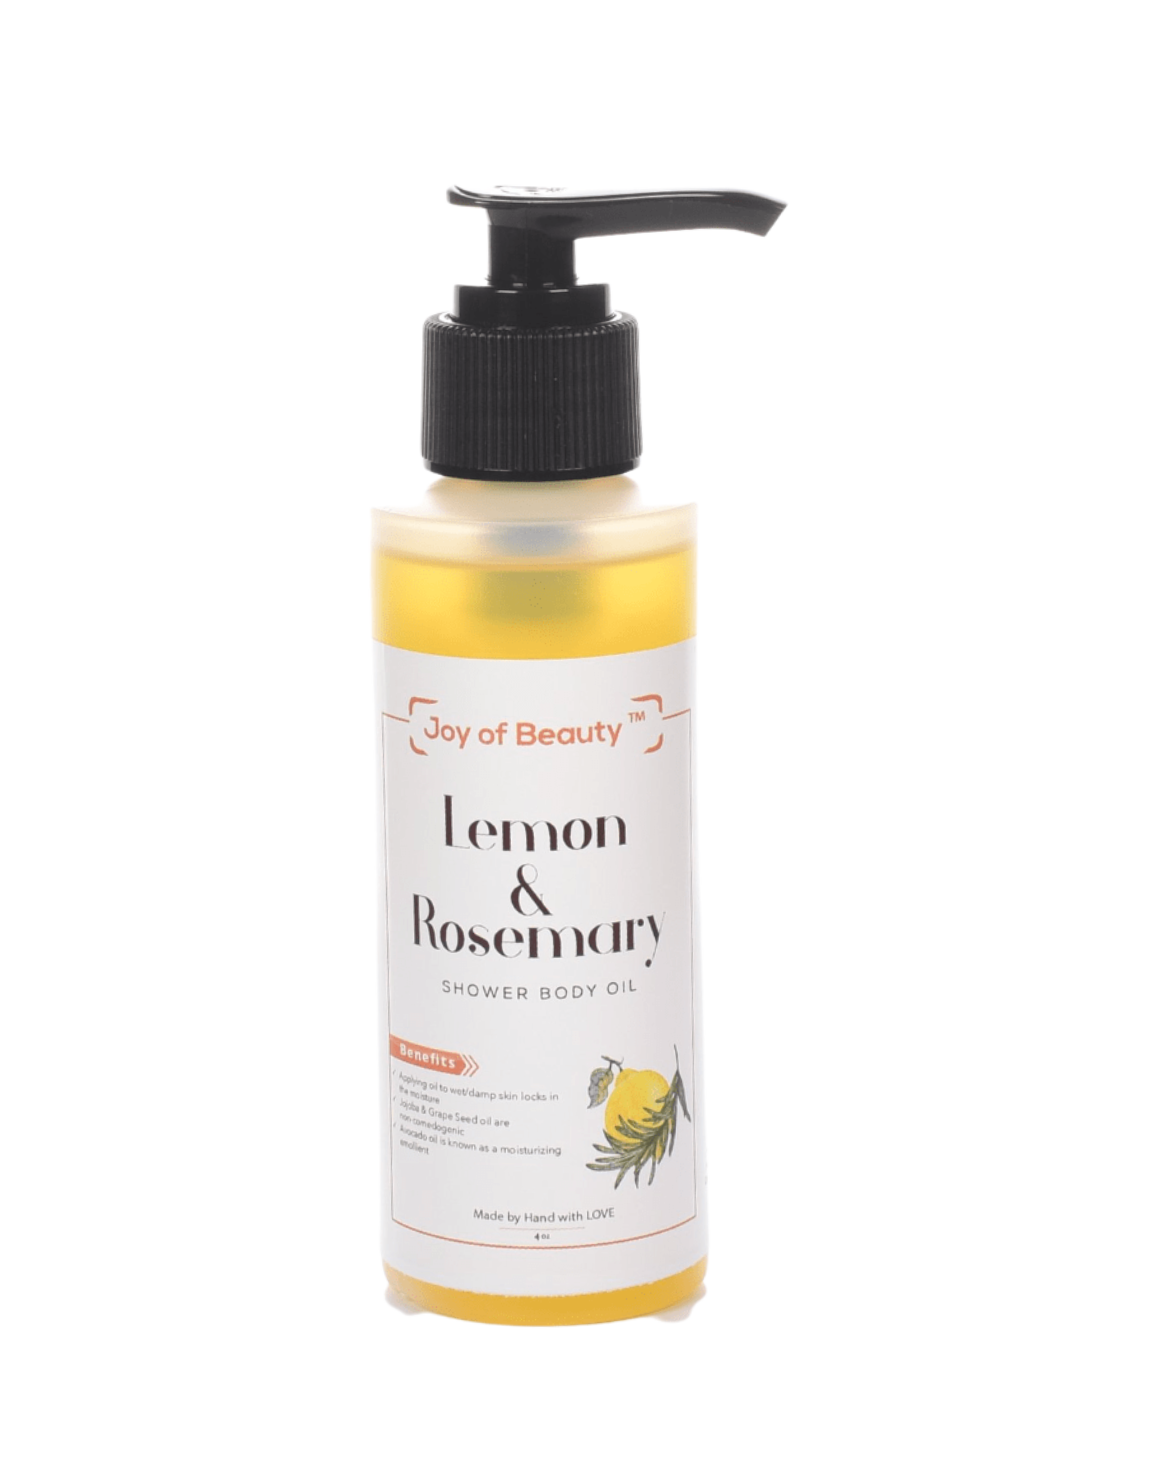 Lemon & Rosemary Shower Body Oil